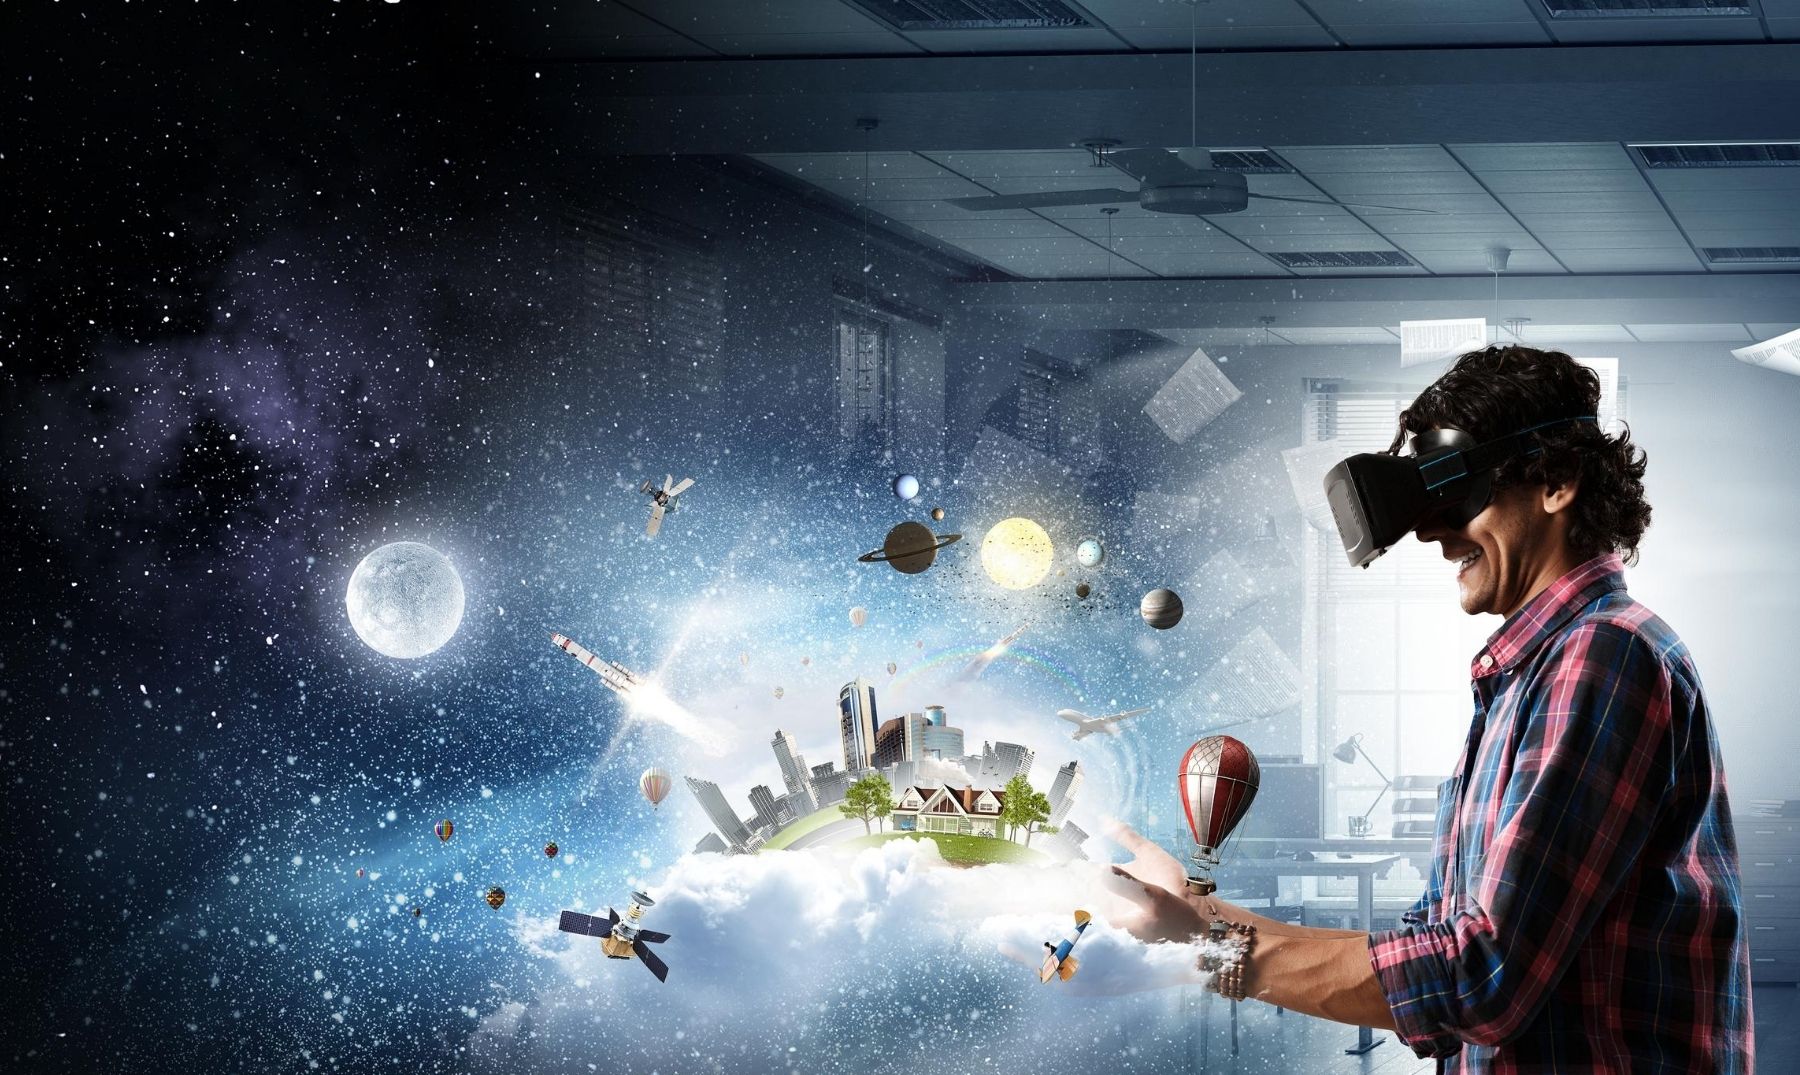 Cuáles son las ventajas y desventajas de la realidad virtual?